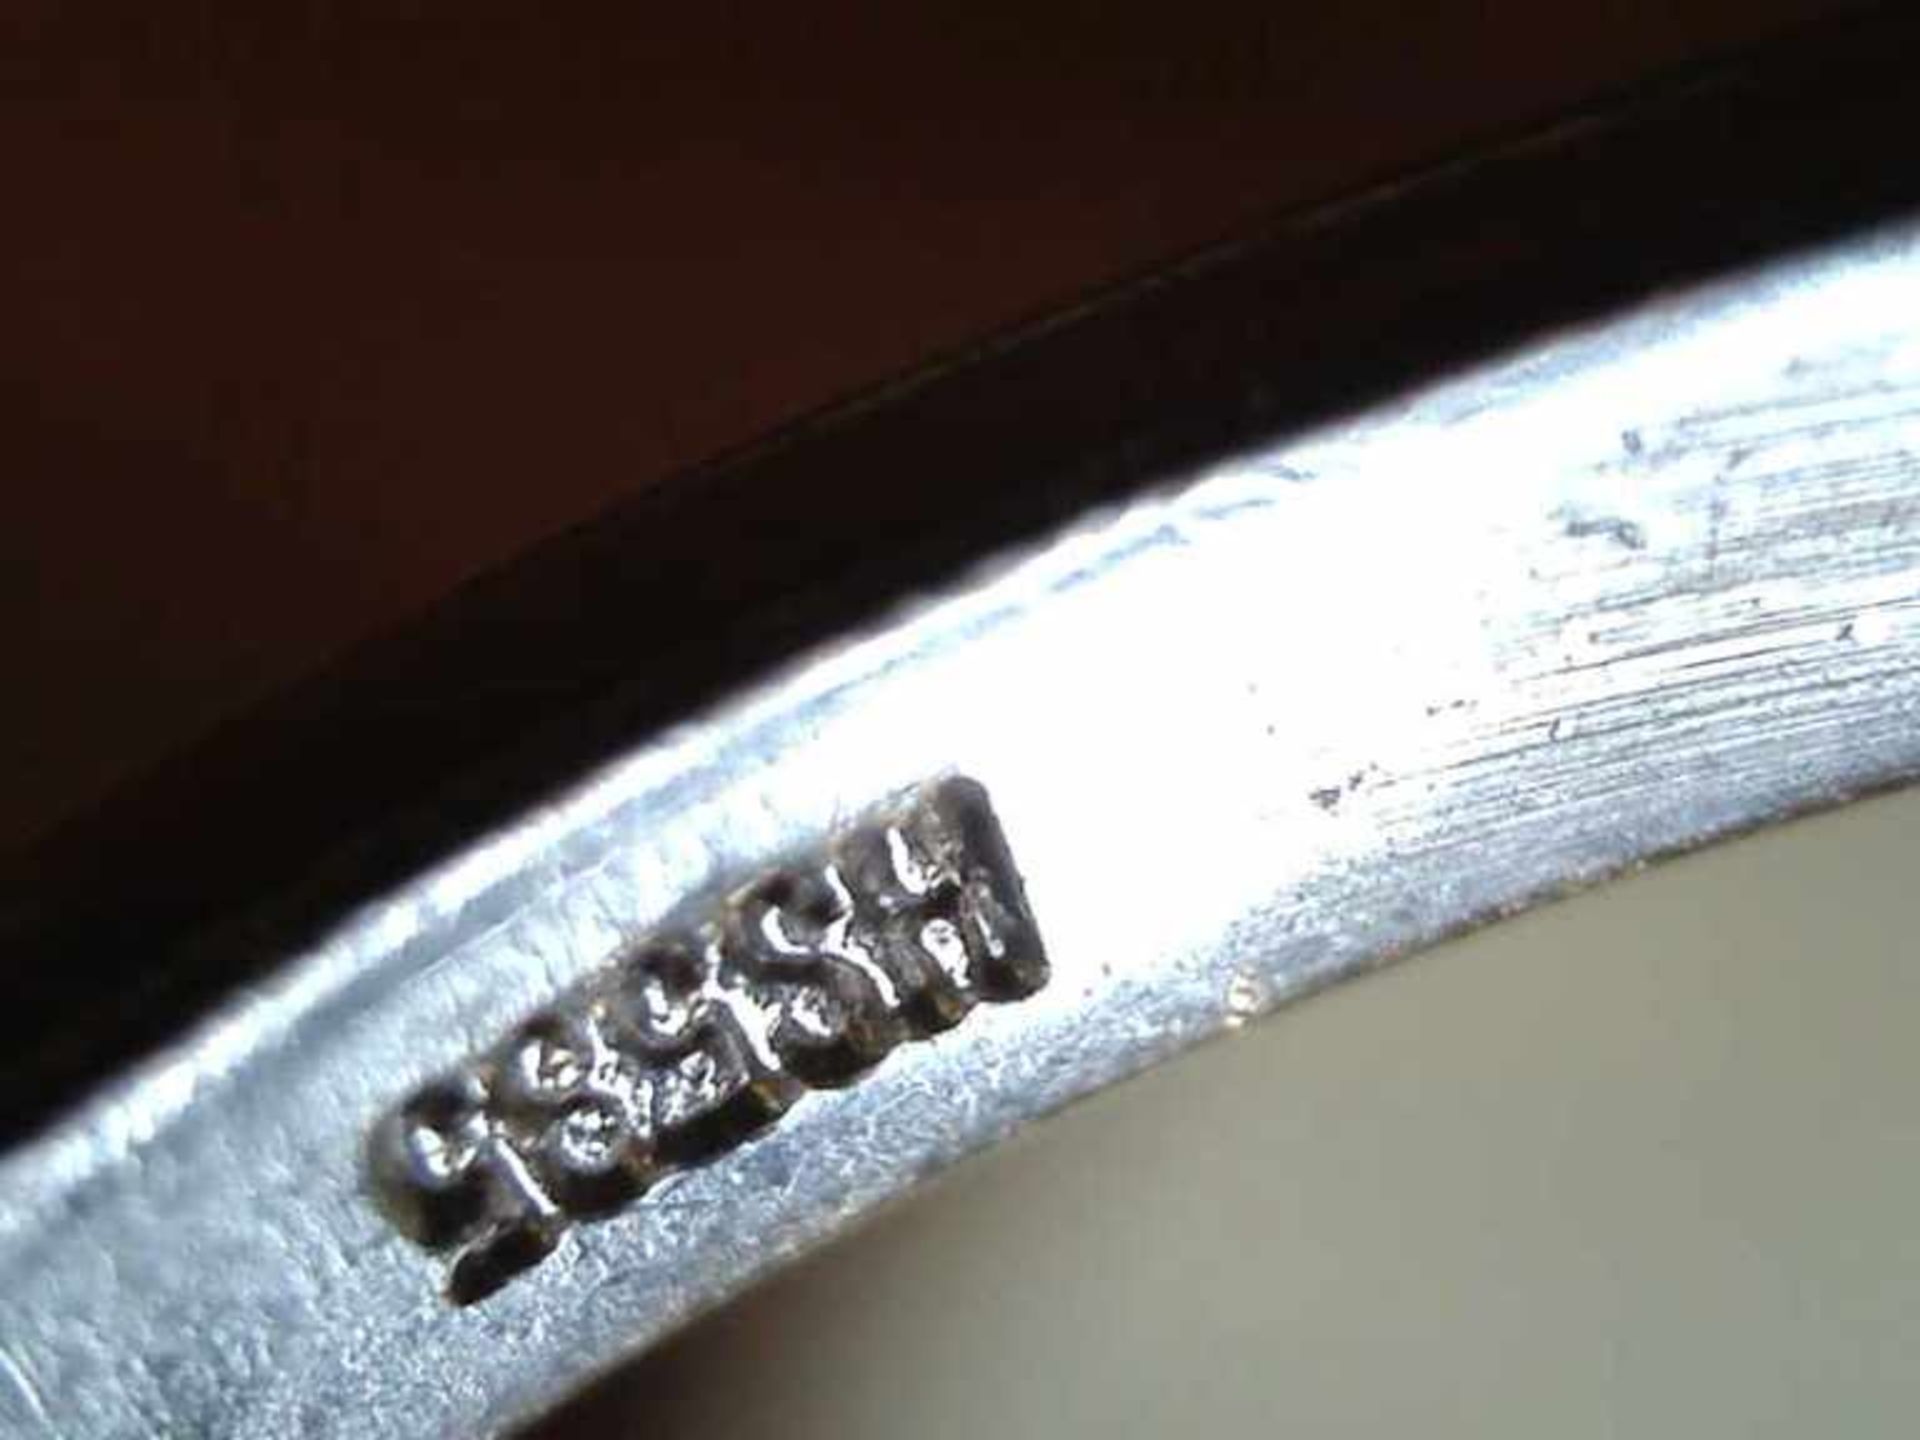 Damenring 585er WG, 3,1 g, kronenförmiger Ringkopf, mit einem großen ovalen Saphir im Zentrum, - Bild 2 aus 2